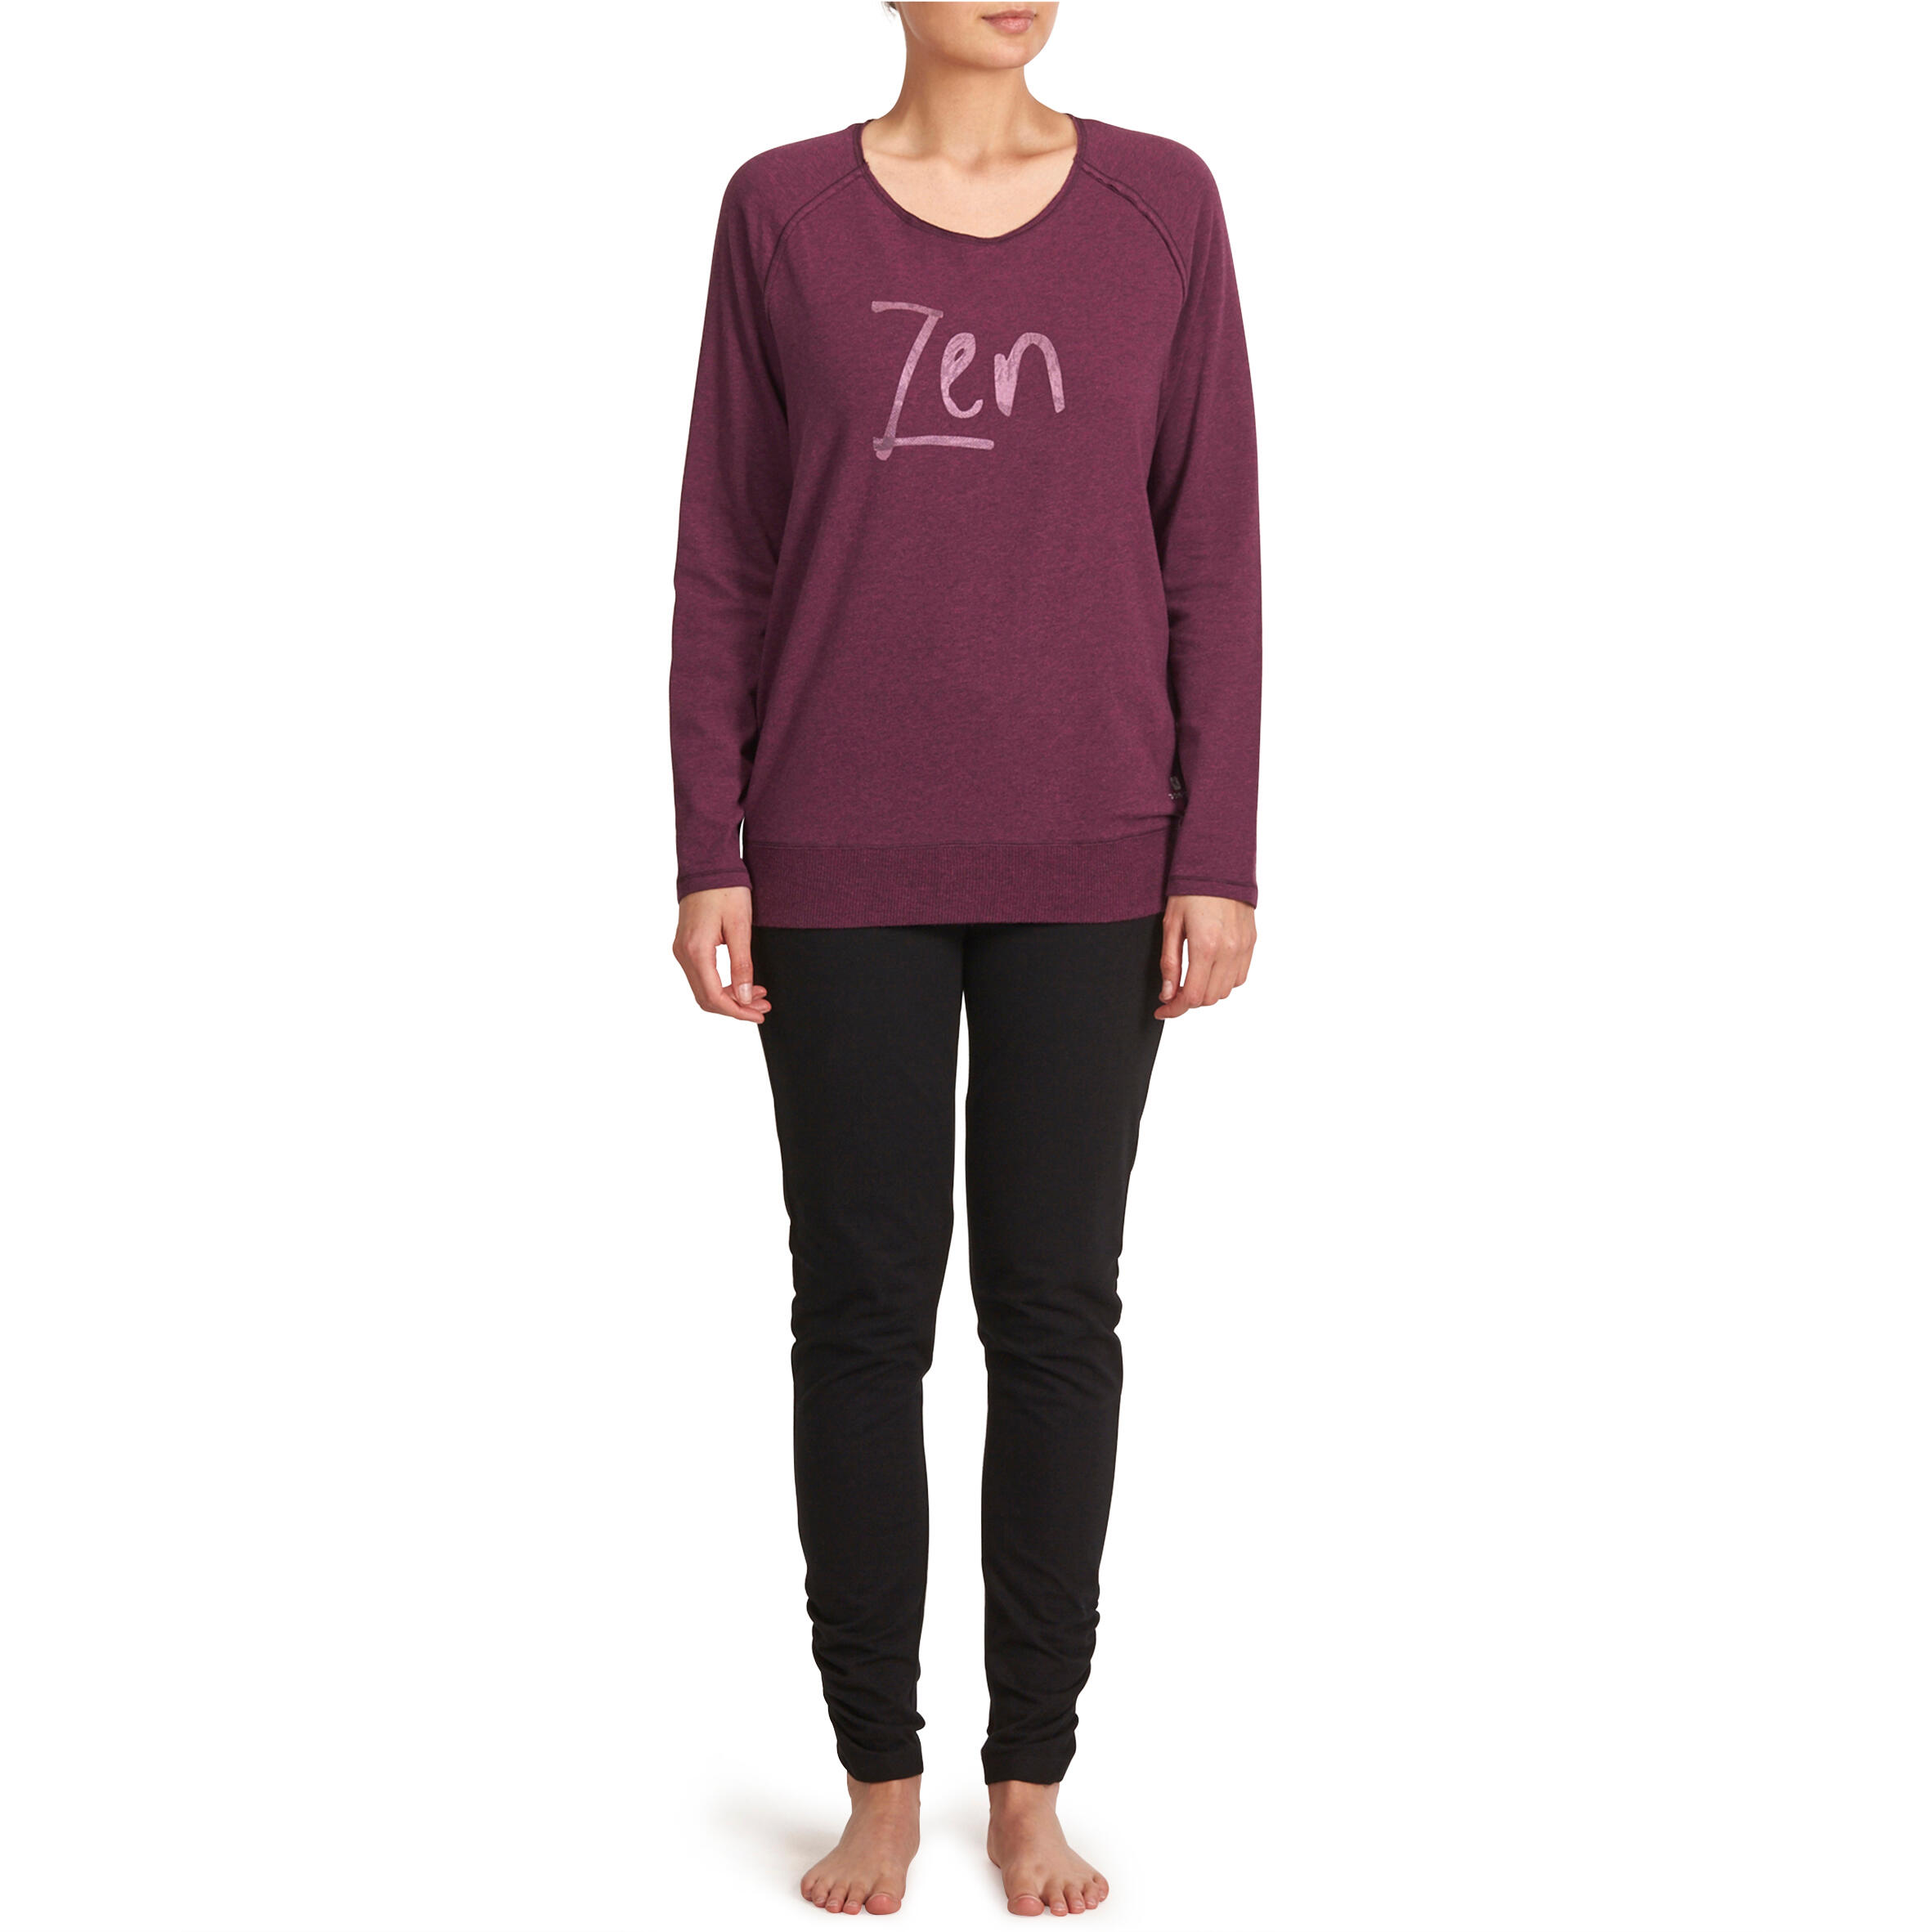 Women's Organic Cotton Long-Sleeved Yoga T-Shirt - Mottled Burgundy 11/12